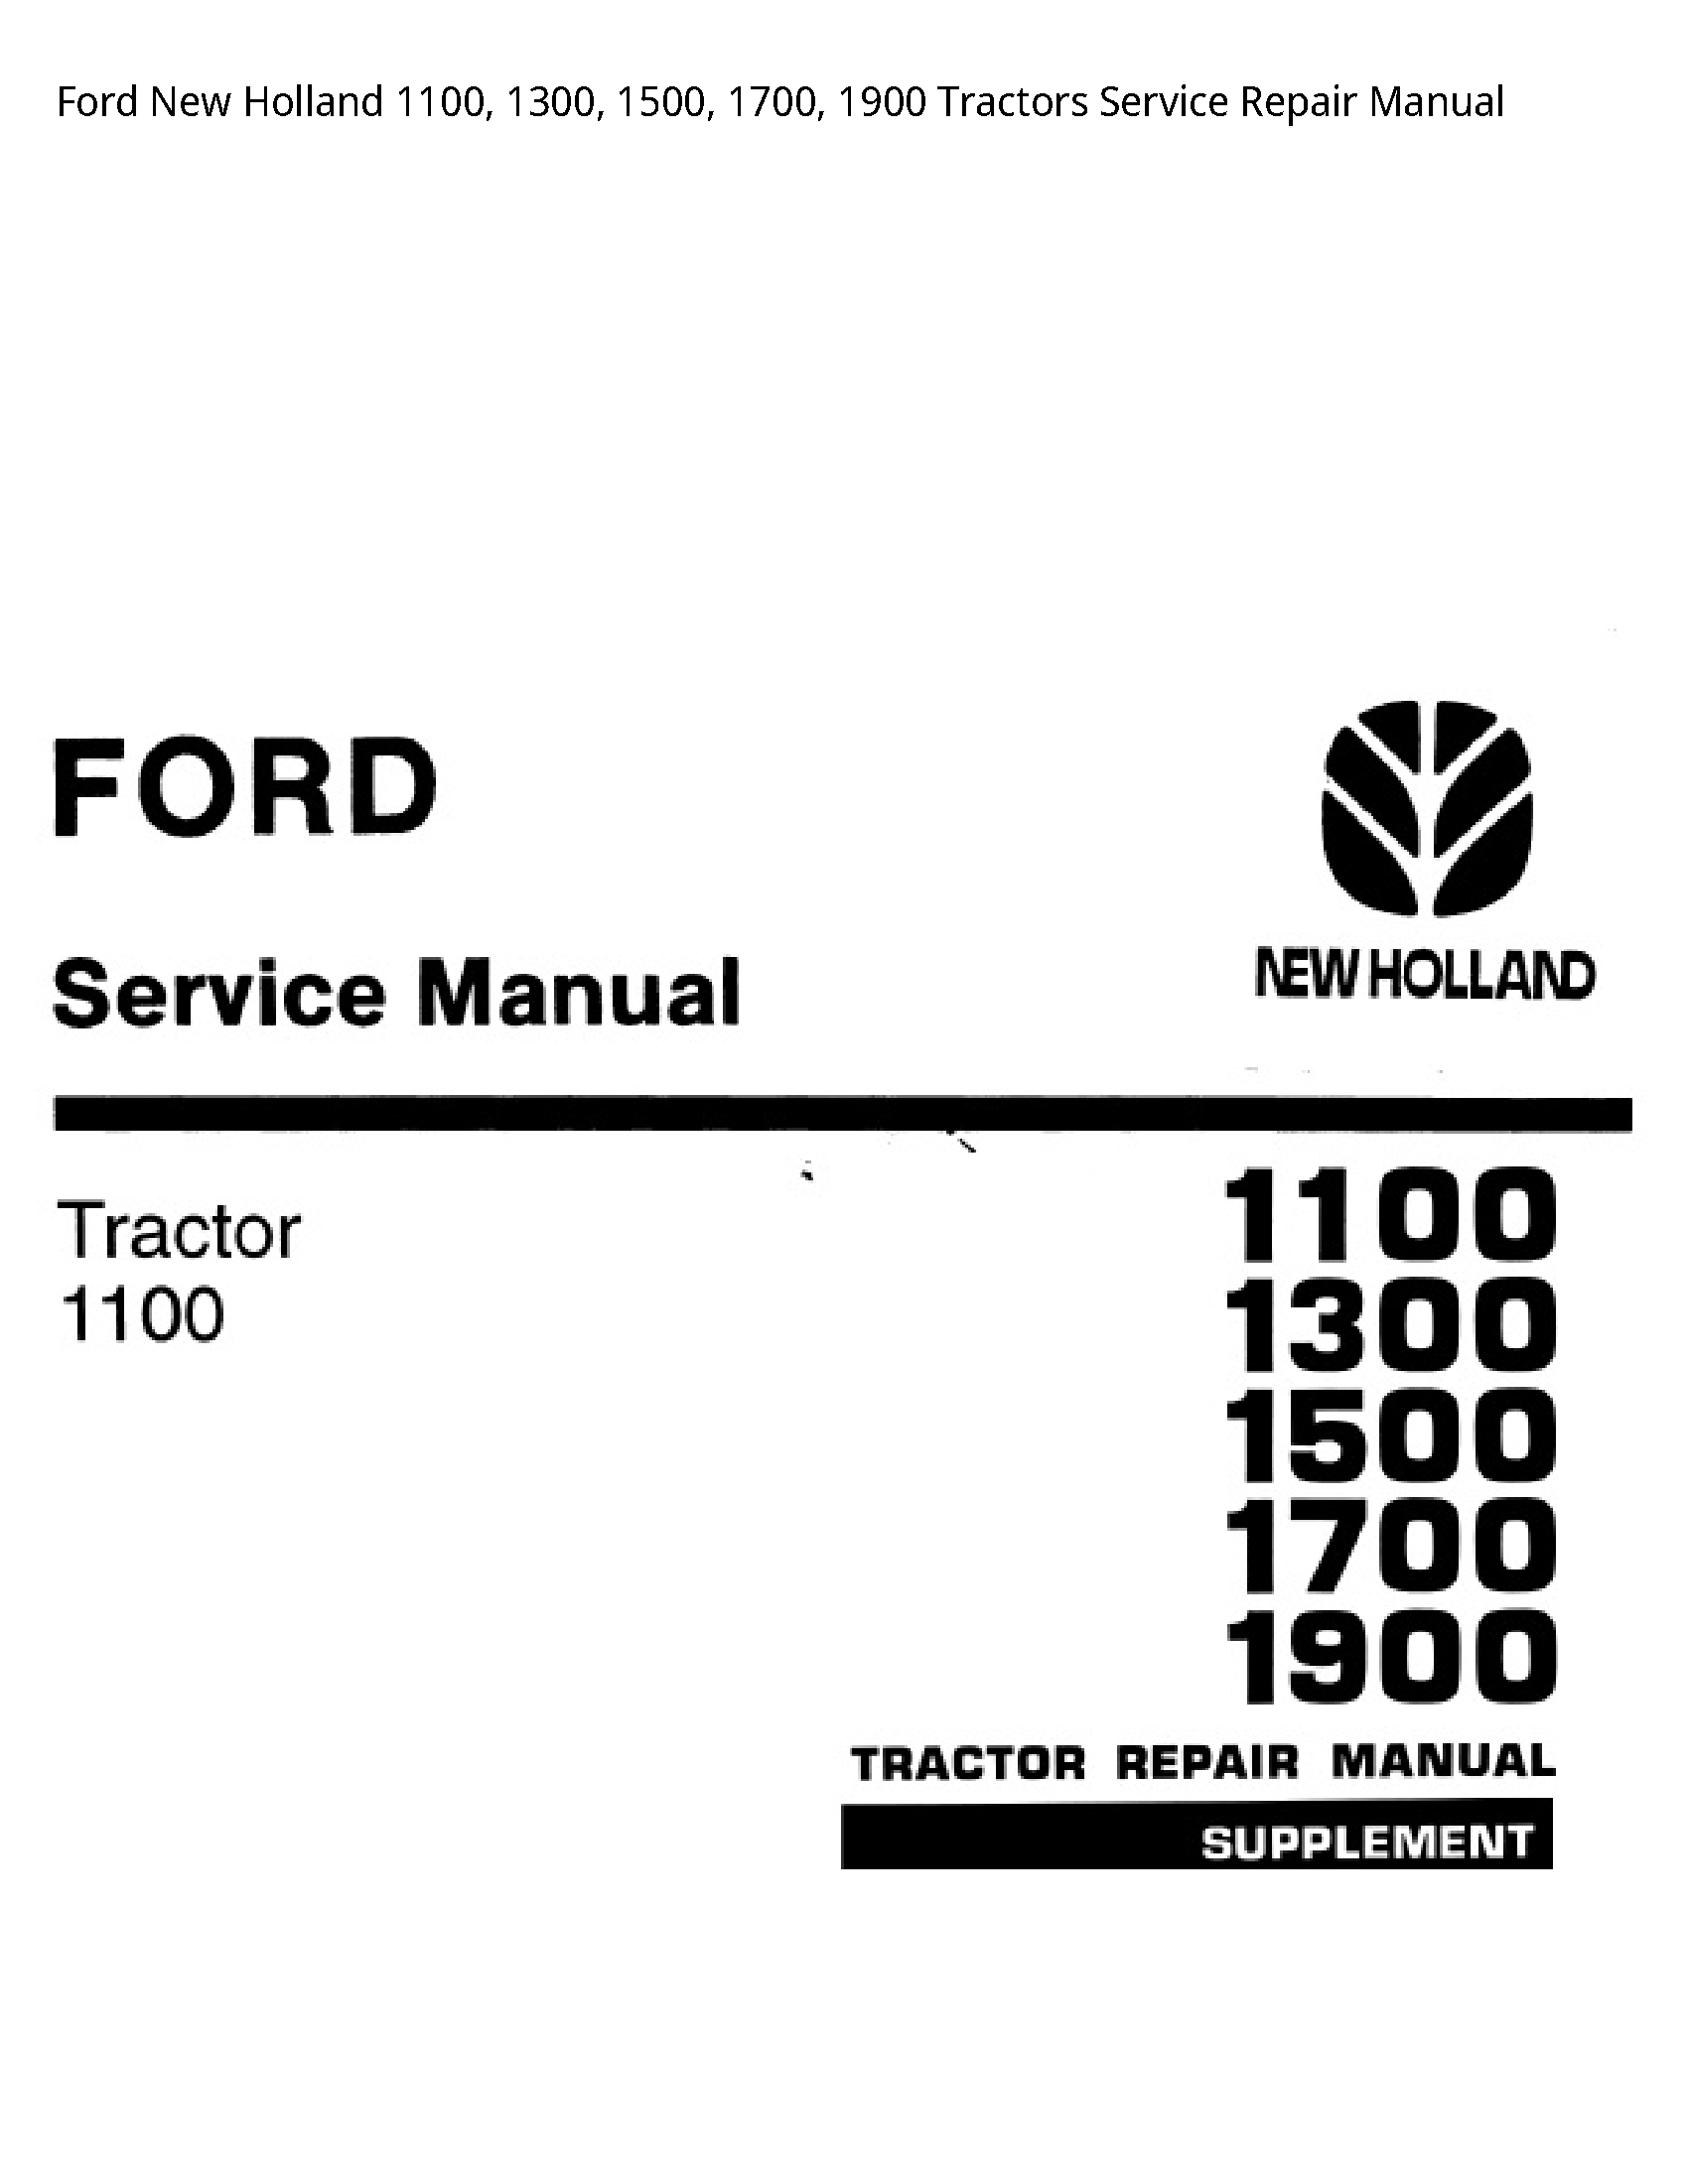  1100 Tractors manual